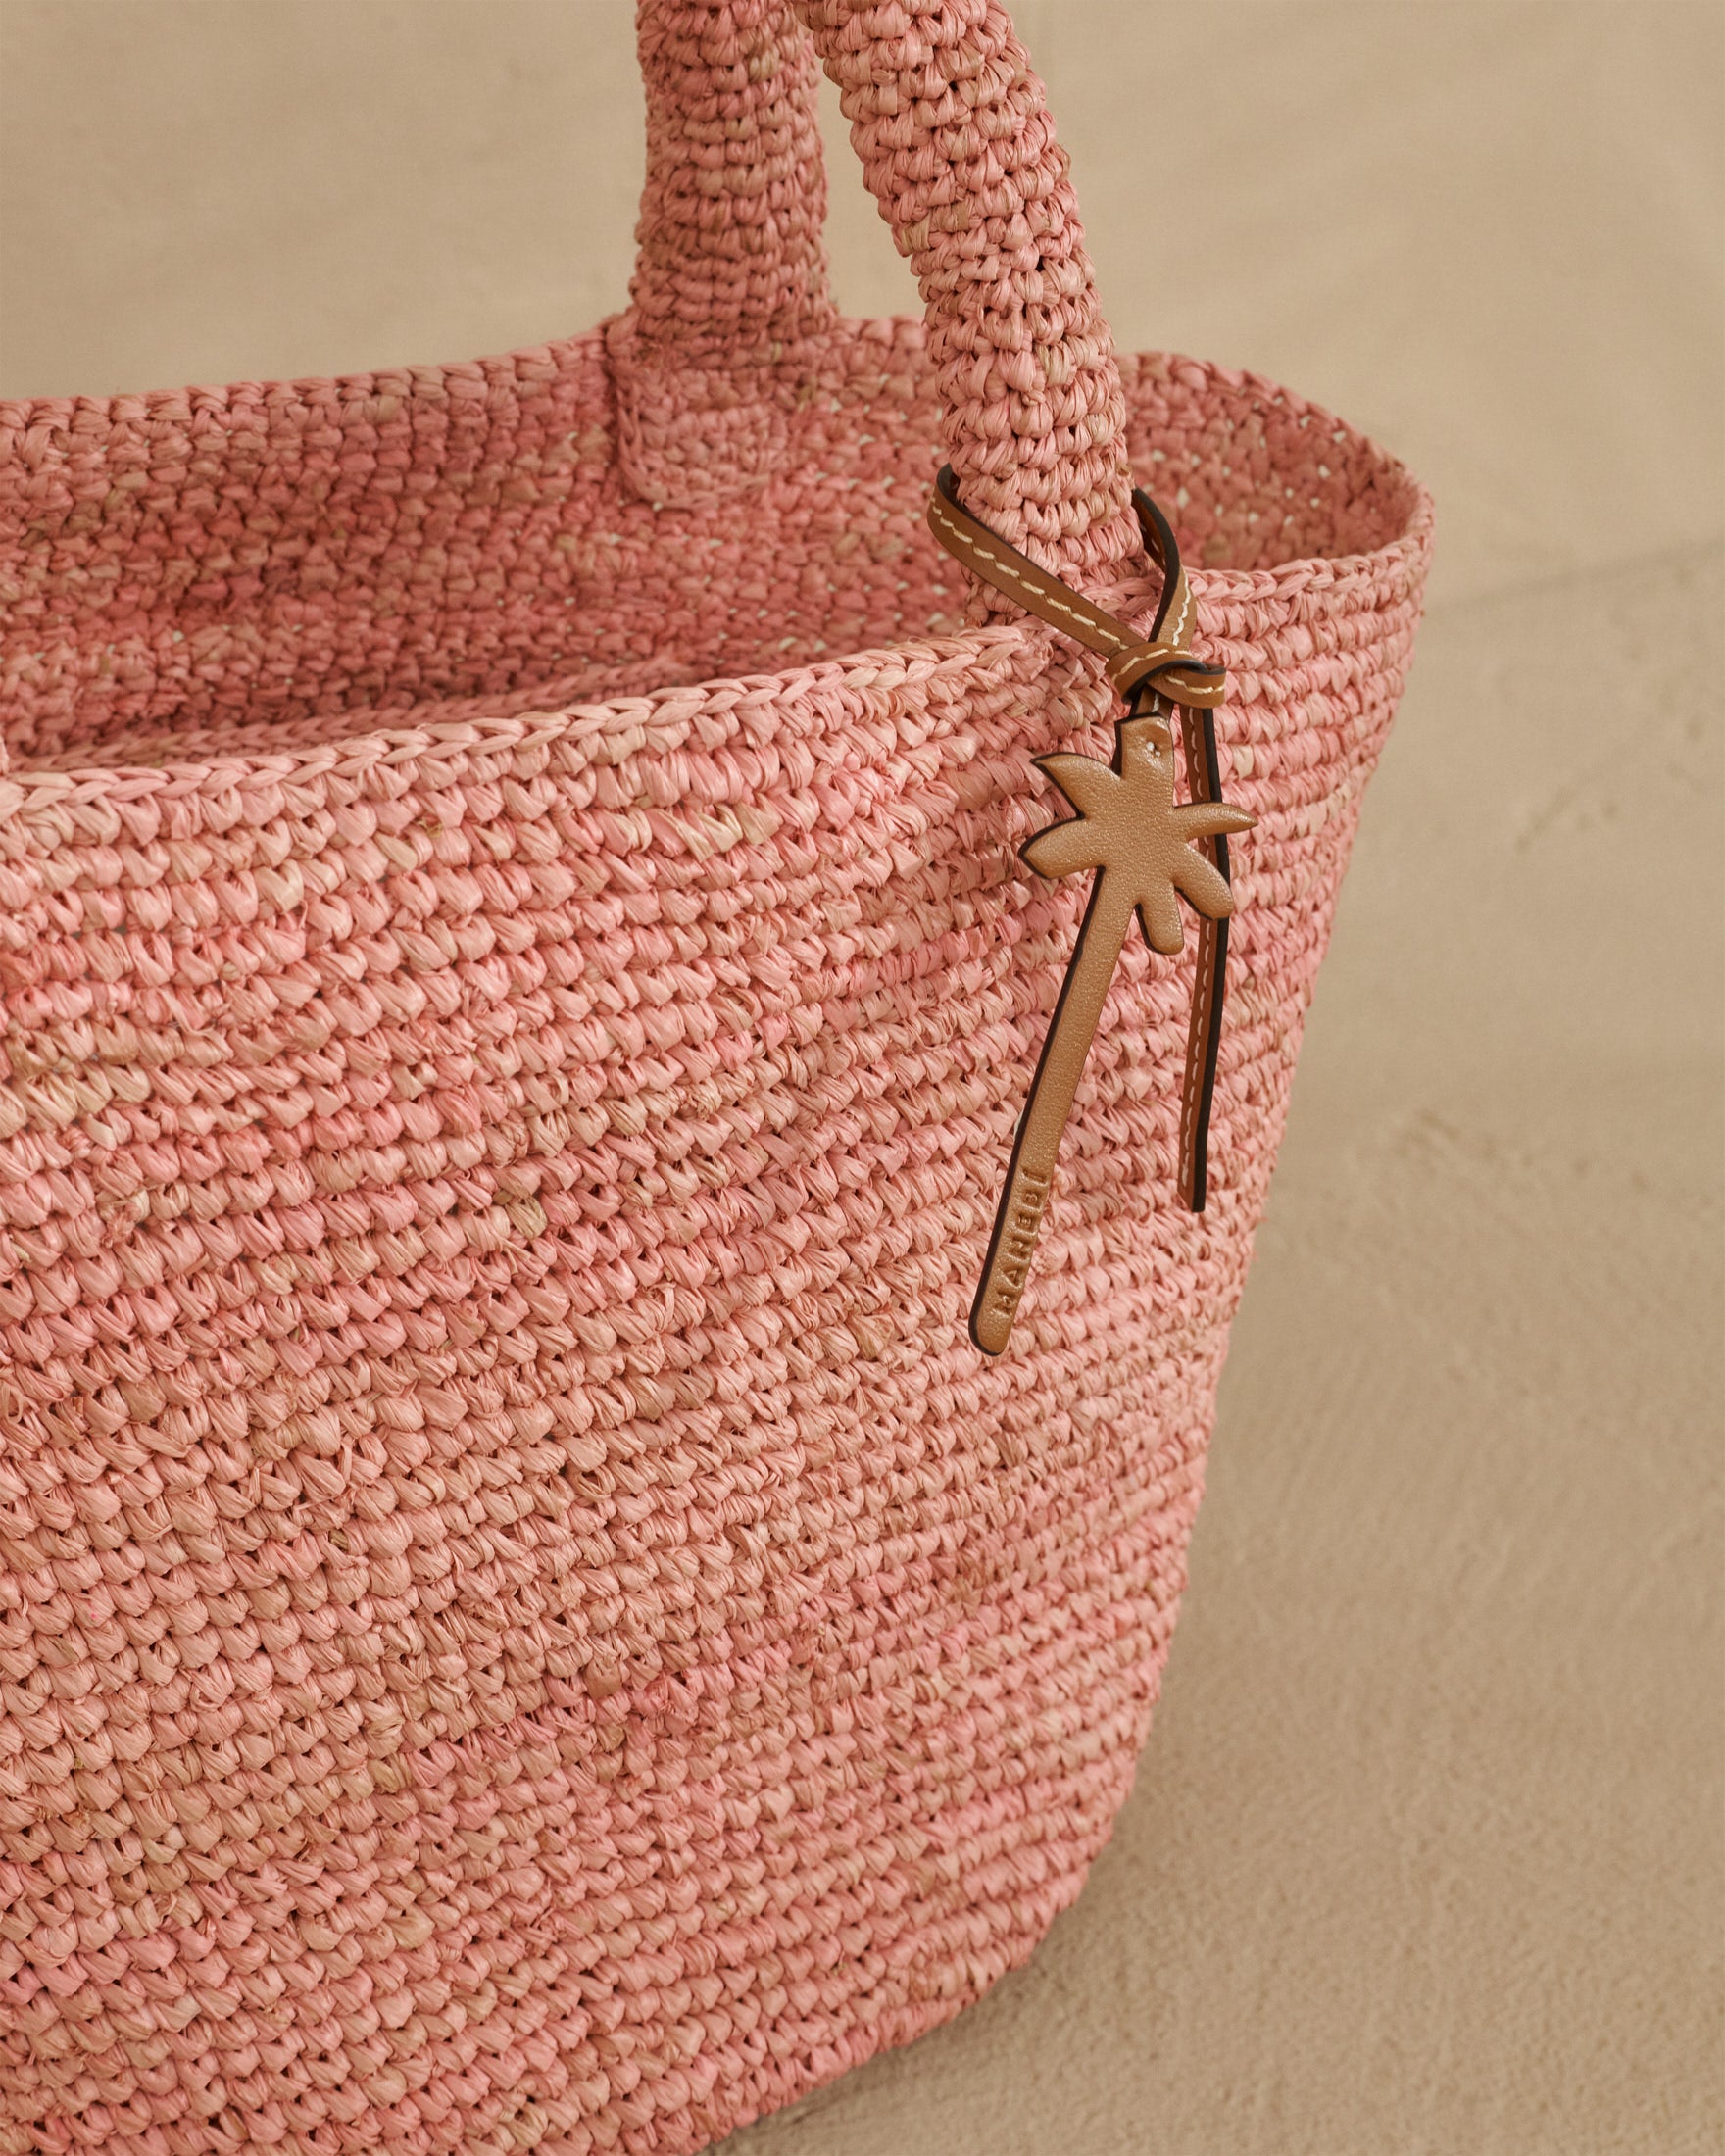 Raffia Summer Bag Medium - Palm Leather Tag - Pink